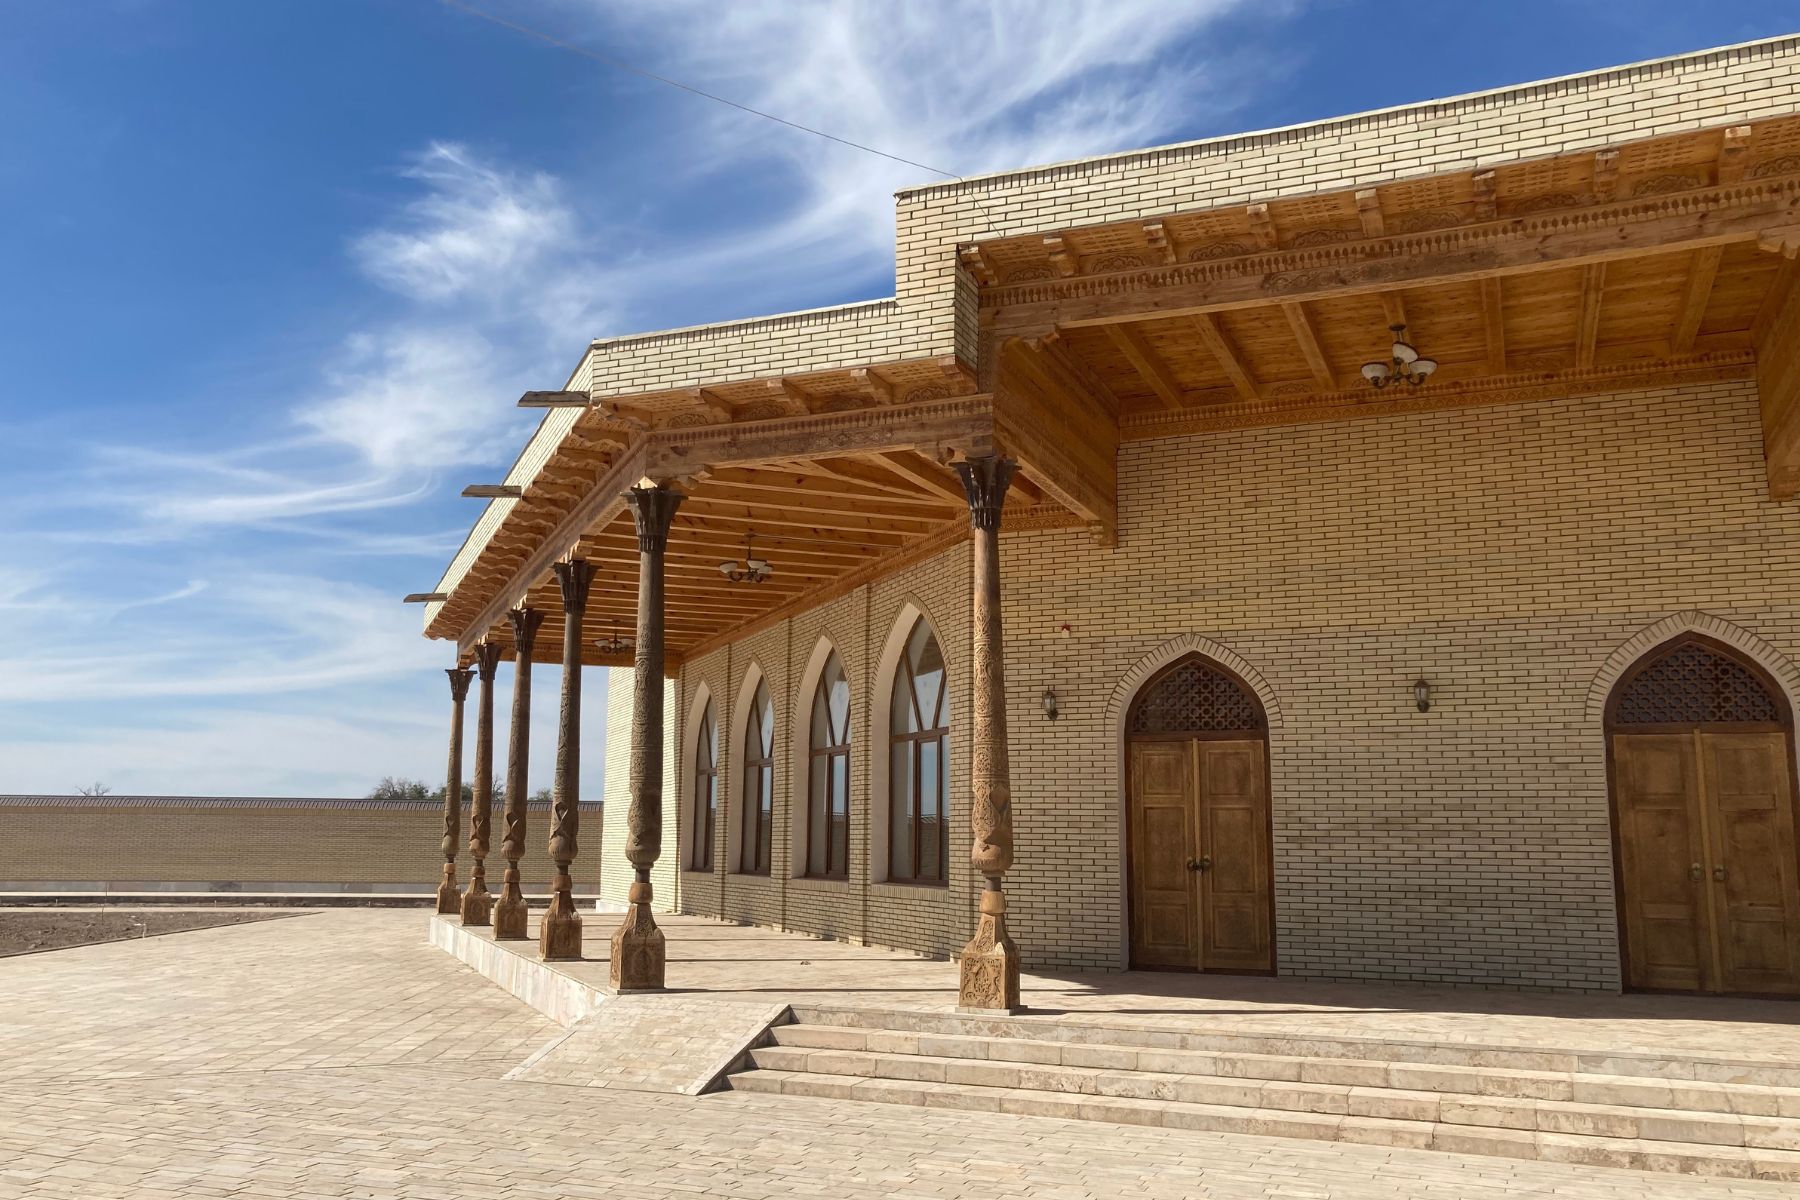 The Tomb of Sulayman Bakirgana – Hakim Ata – along the Silk Road, Karakalpakstan